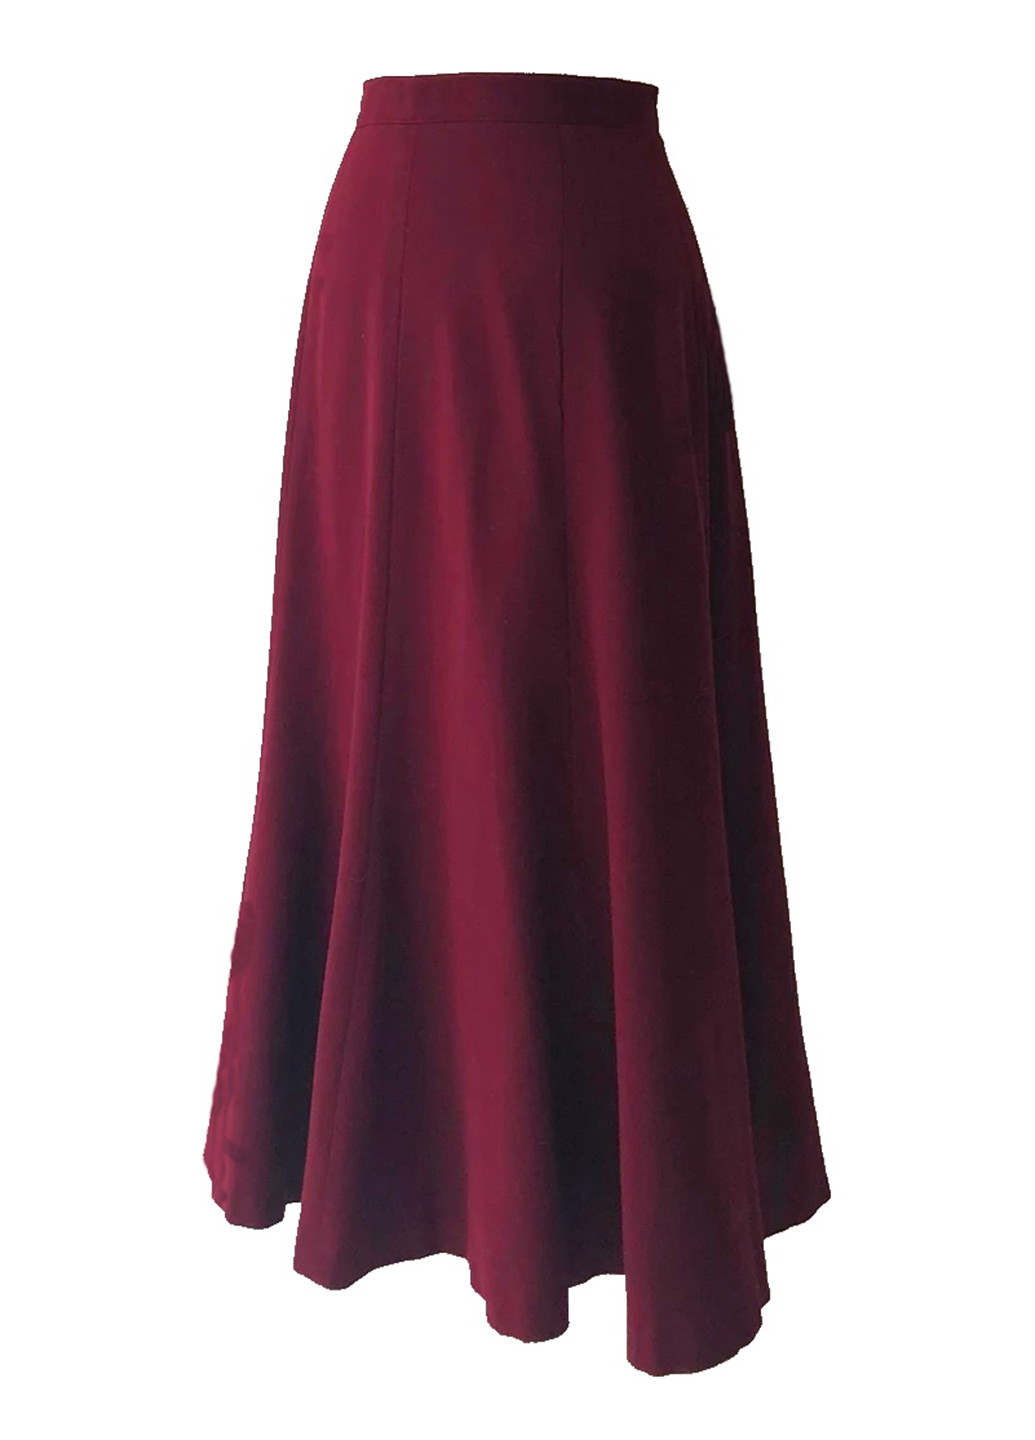 Темно-вишневая кэжуал однотонная юбка The J. Peterman Company а-силуэта (трапеция)